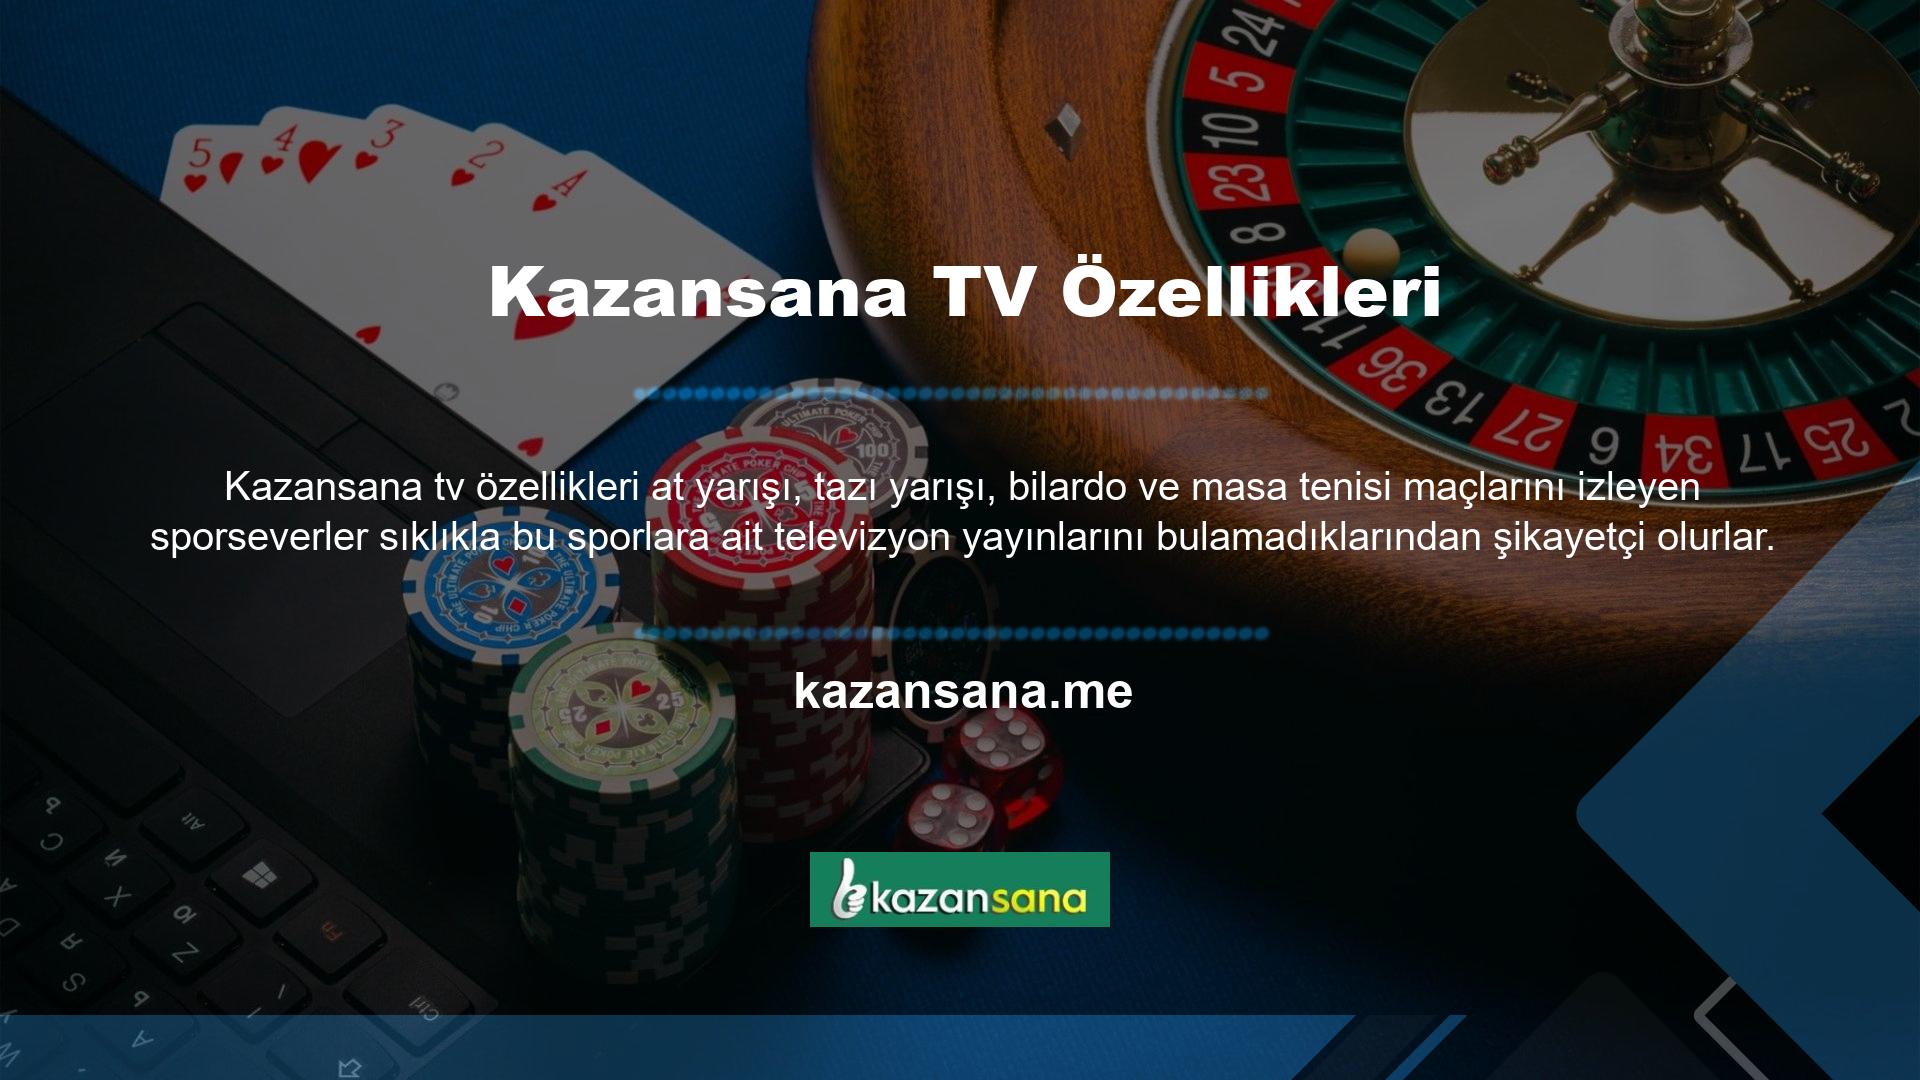 Bu yayınların yer alması Kazansana TV'yi çoğu spor izleyicisinin favori sitelerinden biri haline getirdi